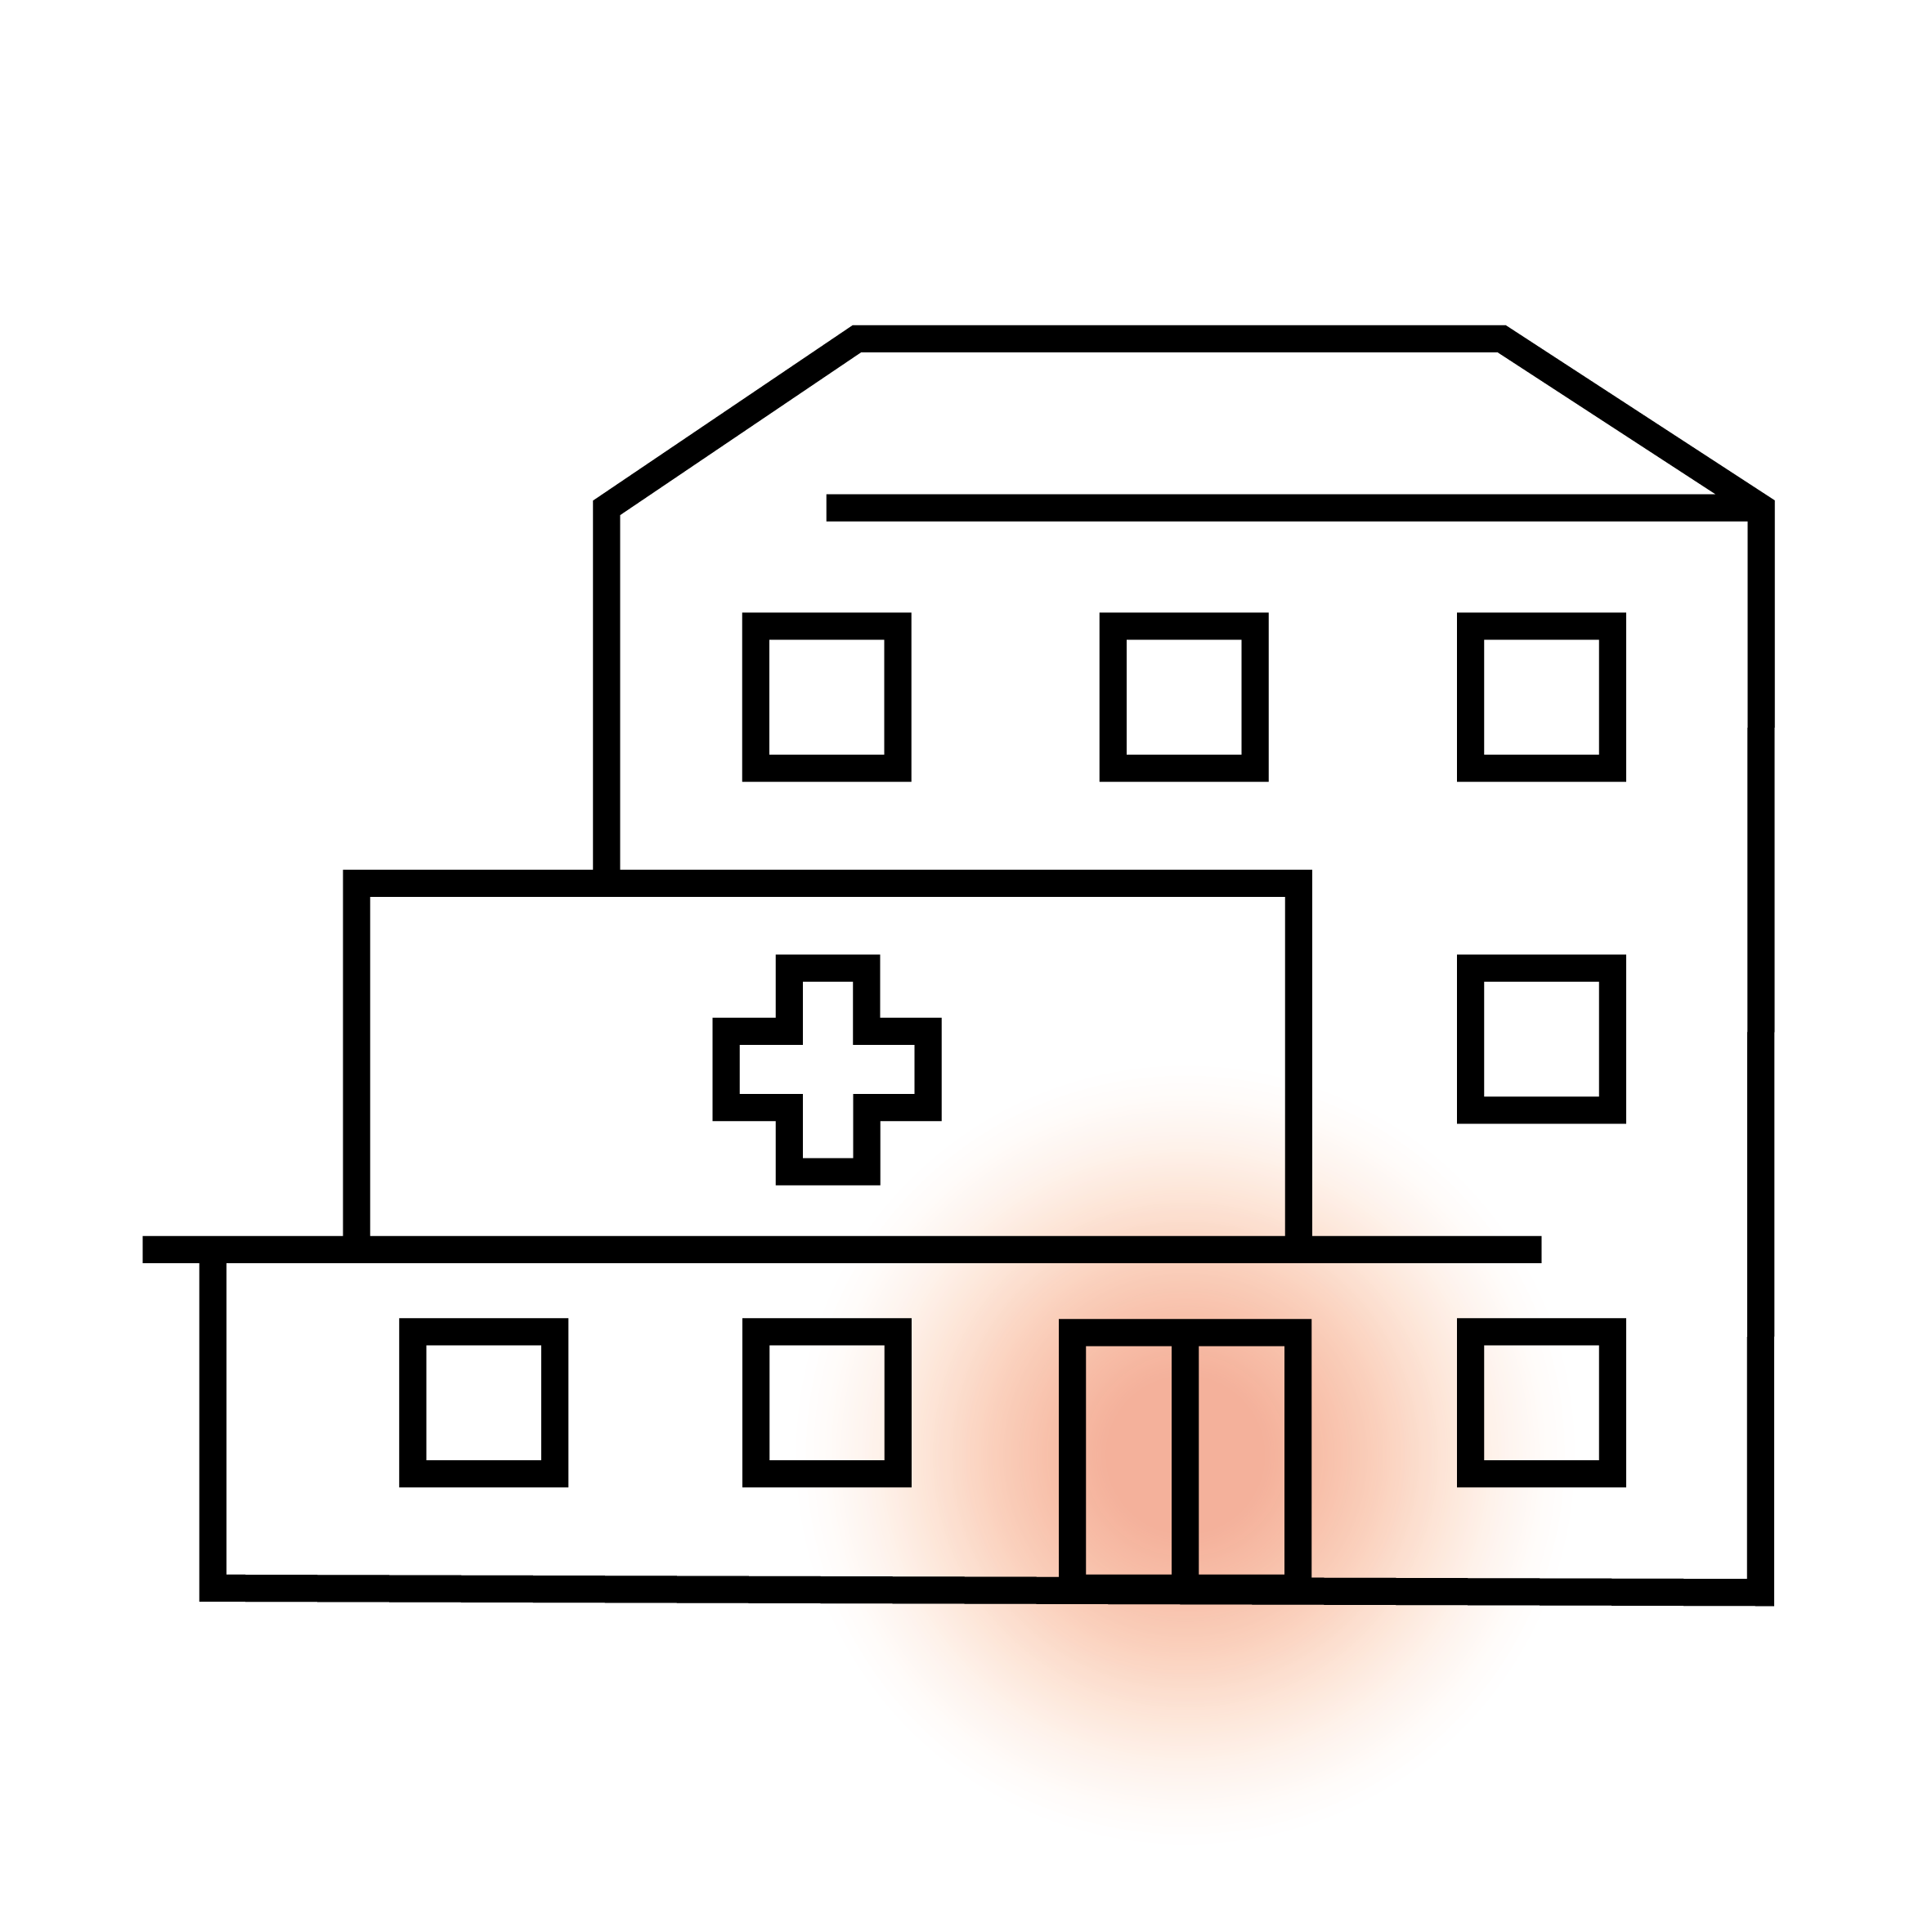 Stilisierte Zeichnung eines Krankenhauses mit Kreuzsymbol.